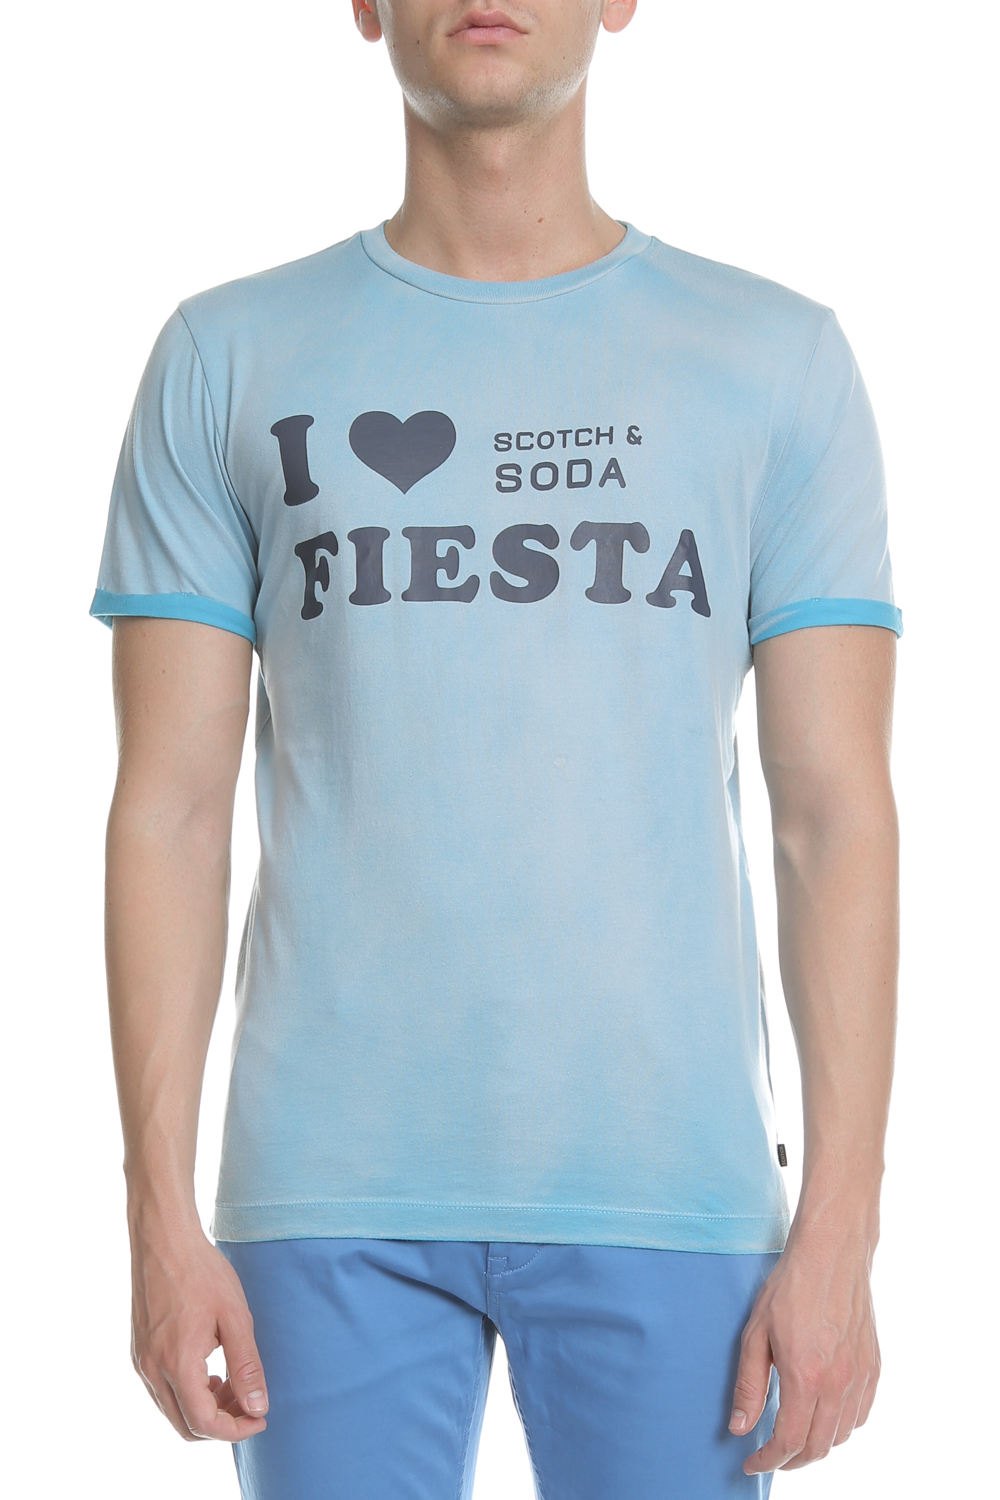 Ανδρικά/Ρούχα/Μπλούζες/Κοντομάνικες SCOTCH & SODA - Ανδρικό t-shirt Sun-bleached SCOTCH & SODA μπλε